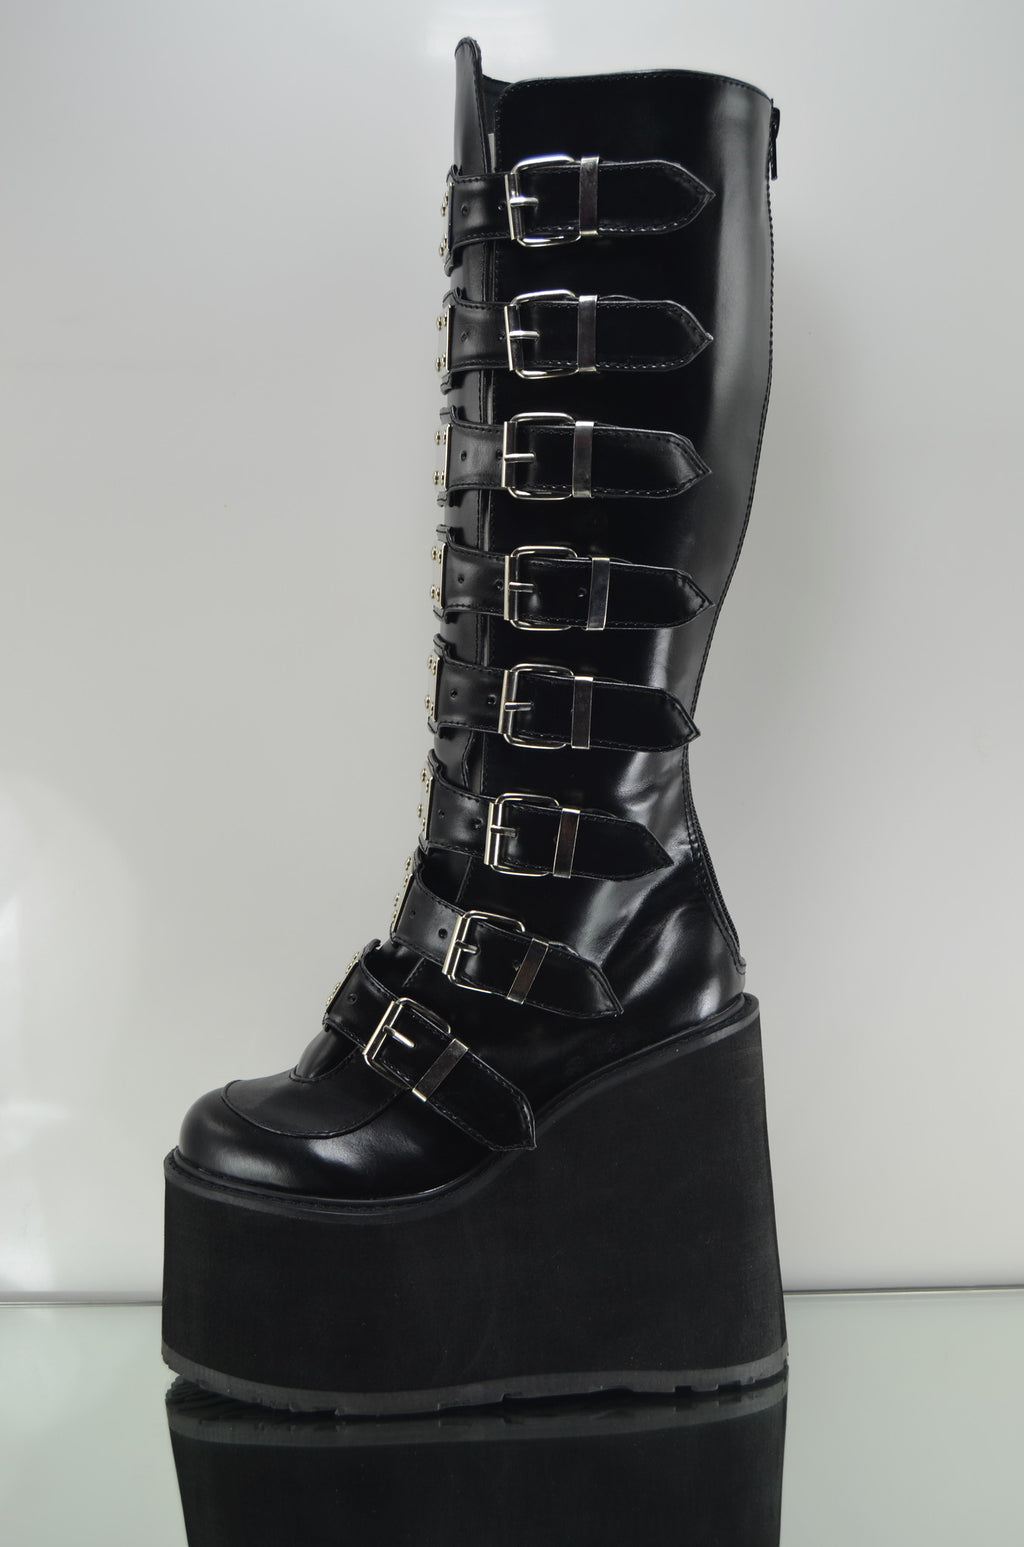 Swing 815 Black Multi Strap Goth Punk Knee Boot 5.5" Platform Vegan - Totally Wicked Footwear